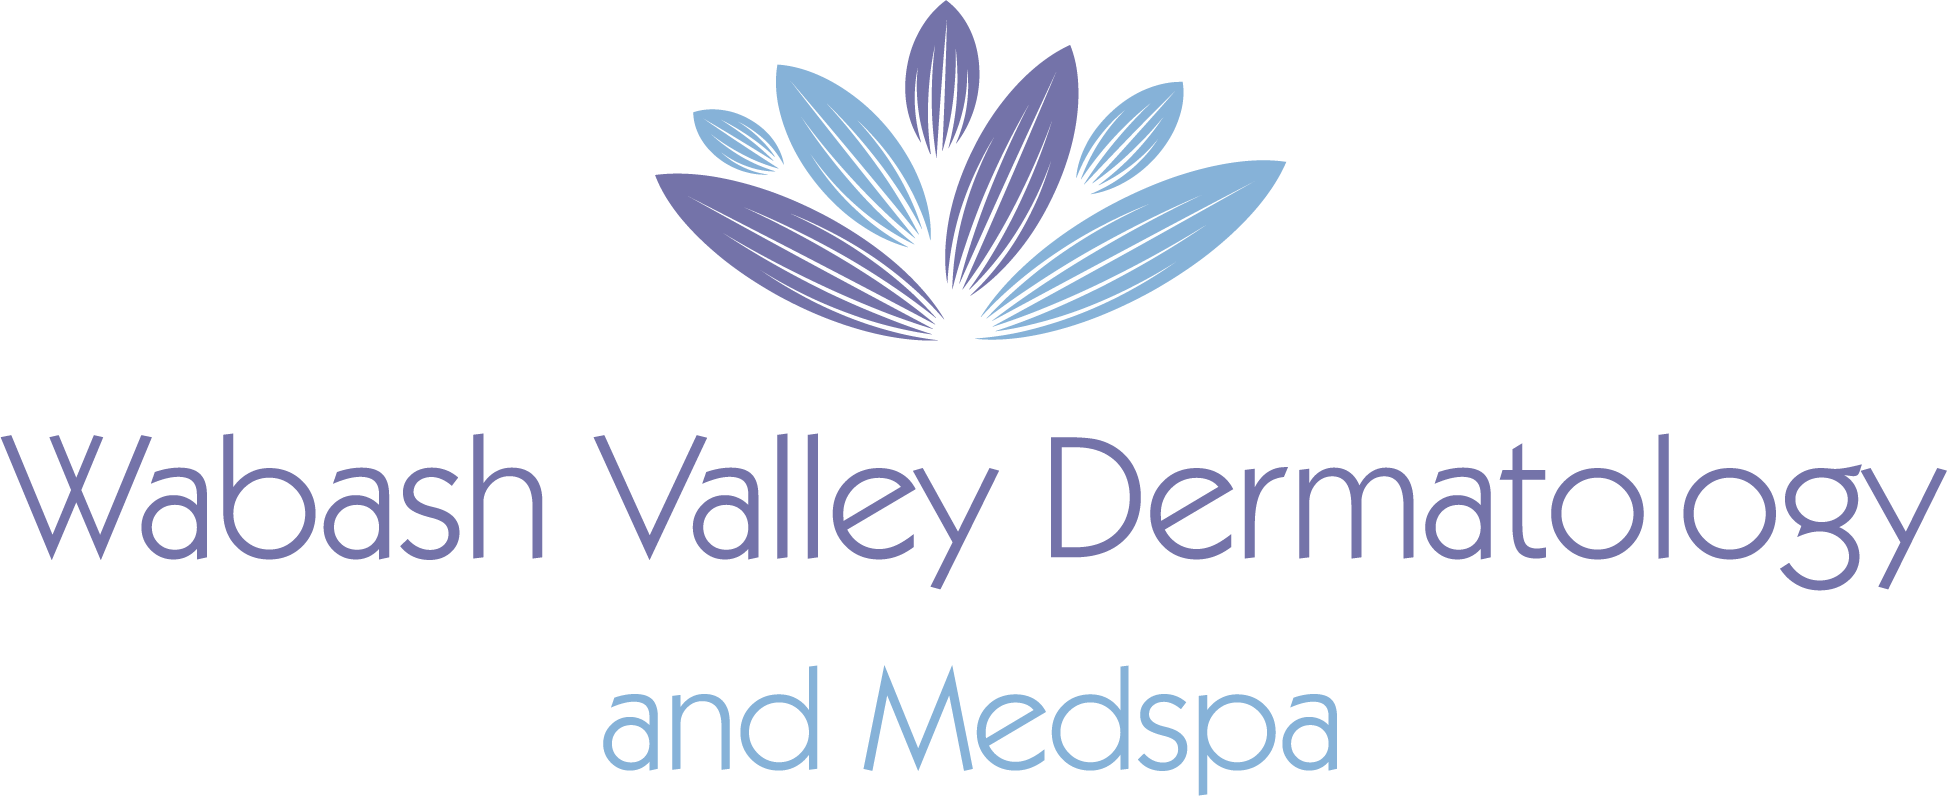 Wabash Valley Dermatology and Medspa